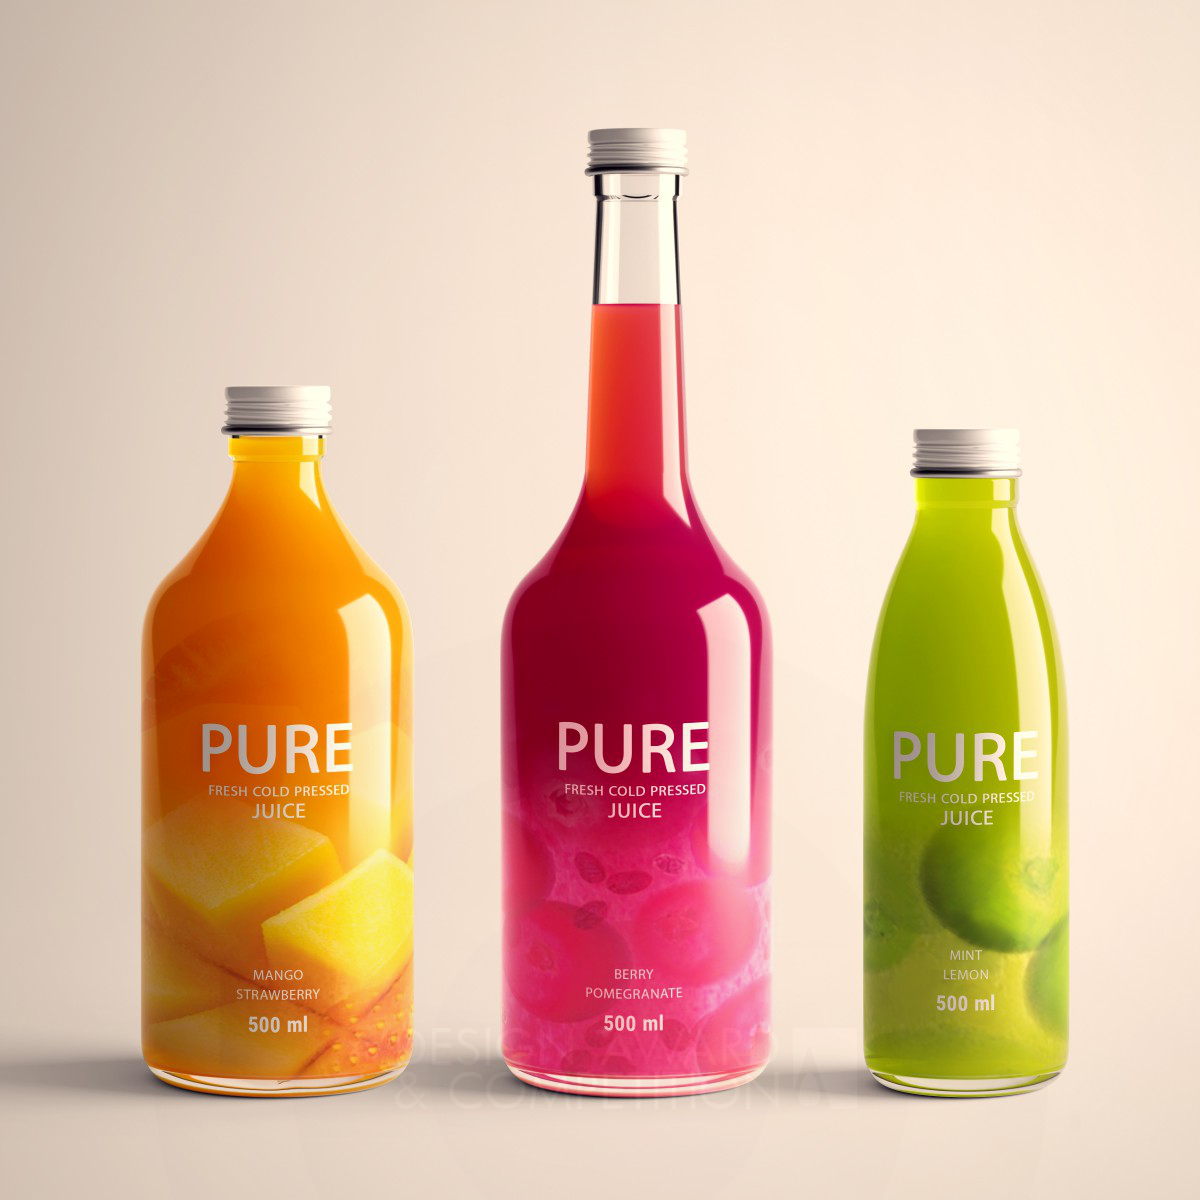 Pure Juice Packaging